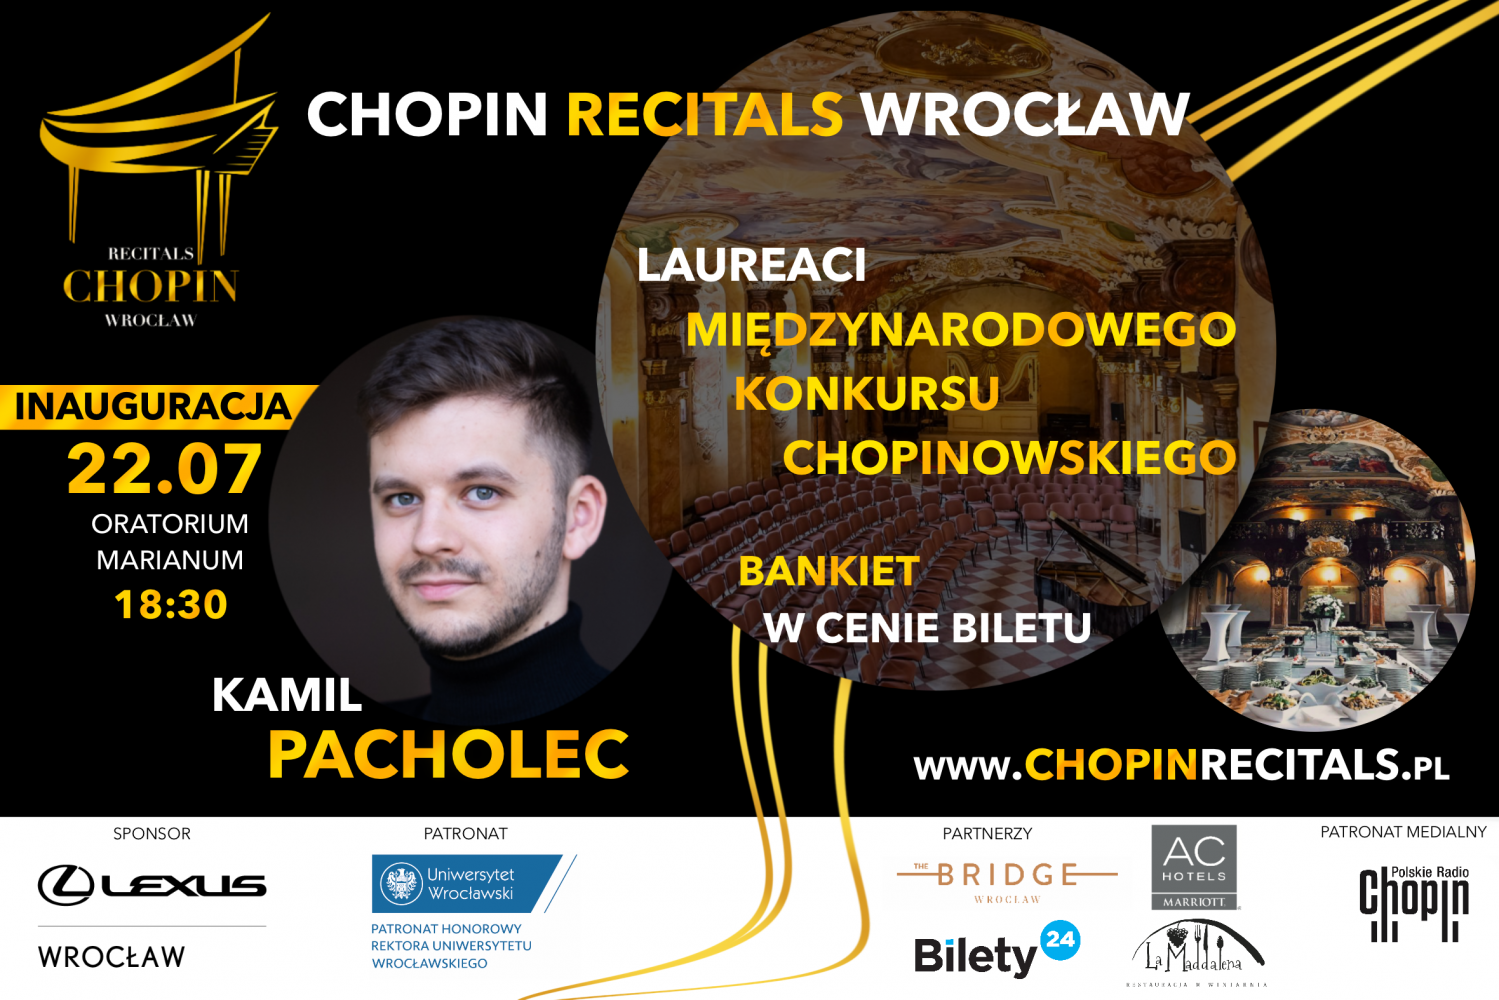 Inauguracja Chopin Recitals Wrocław - Kamil Pacholec